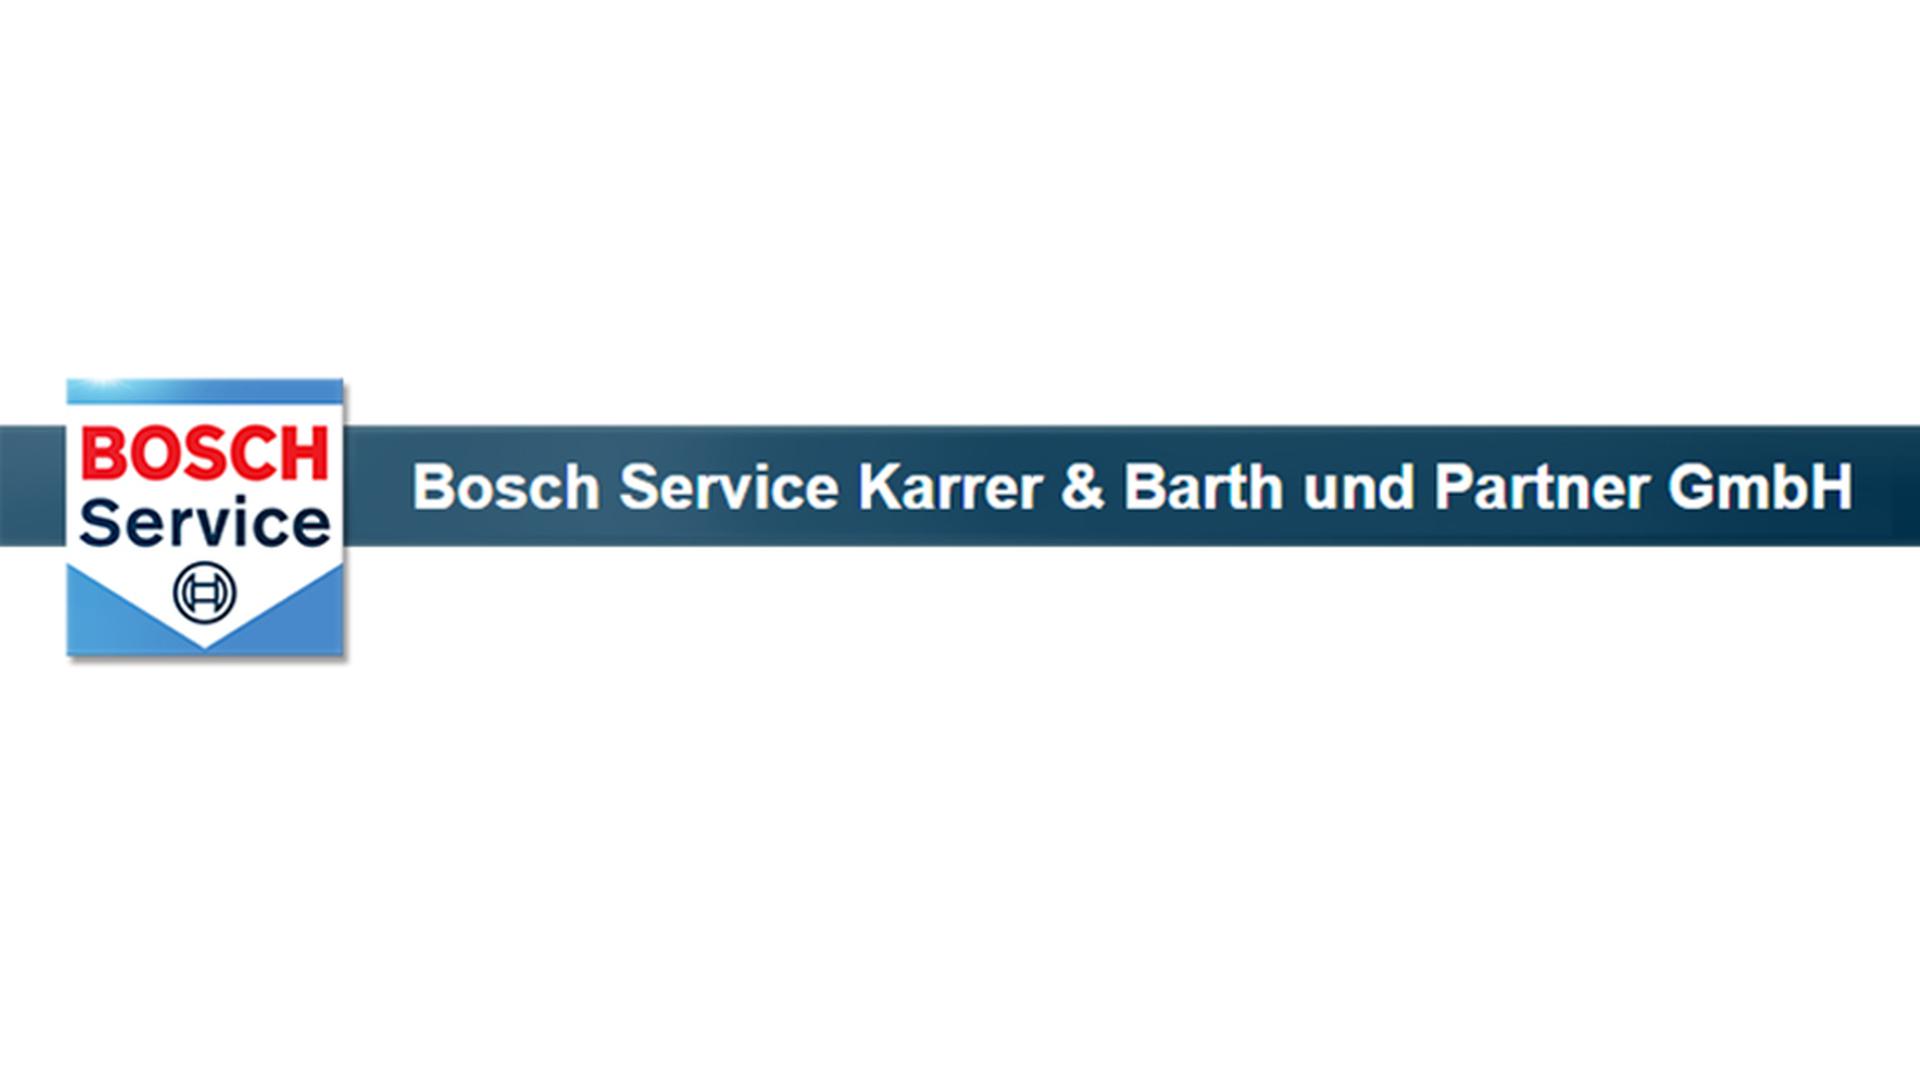 Bosch Service Karrer & Barth und Partner GmbH